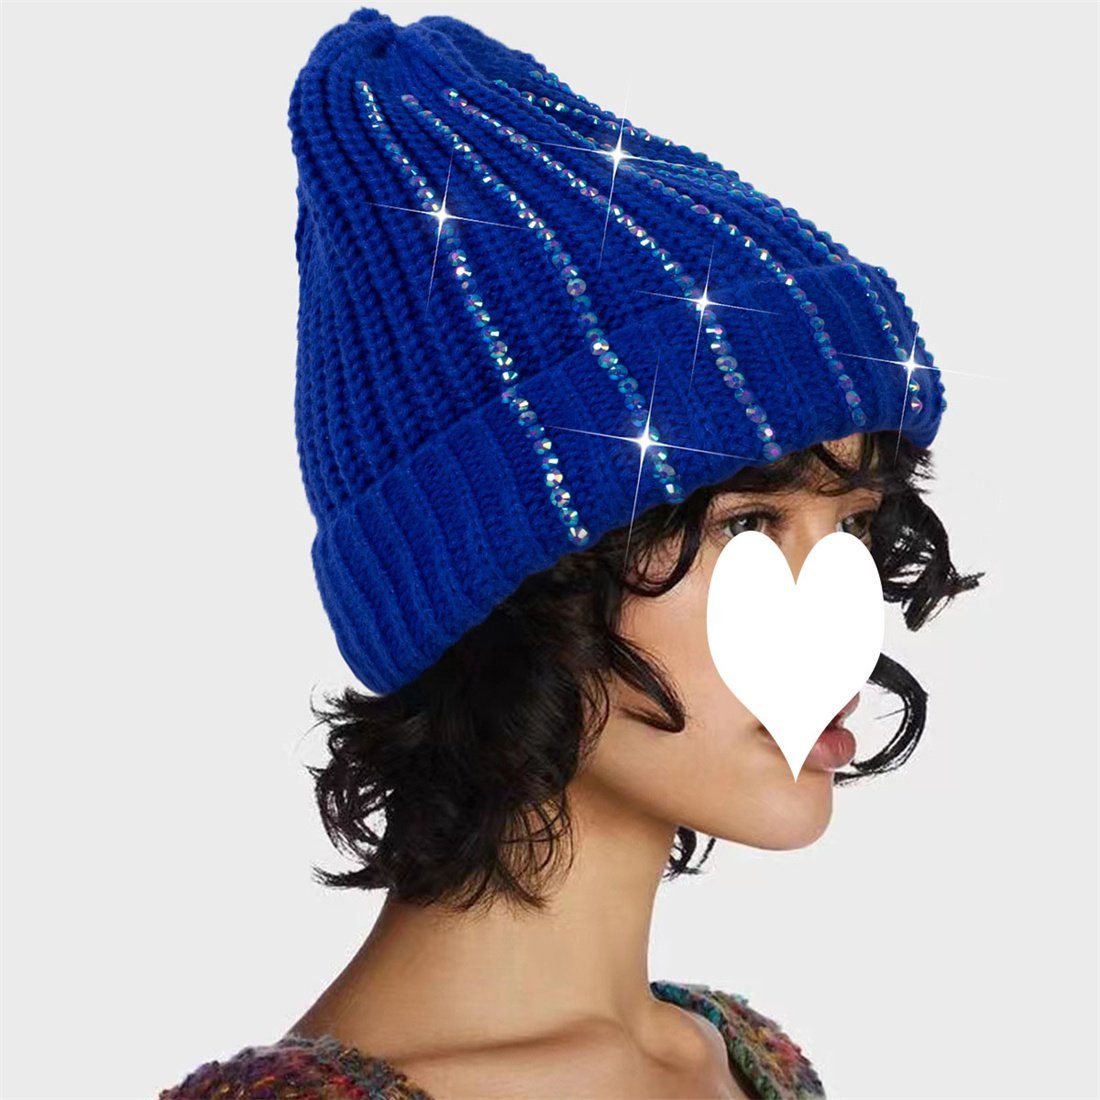 DÖRÖY Strickmütze Damen warme Outdoor-Mode Winter blau verdickt warme Strickmütze, Wollmütze